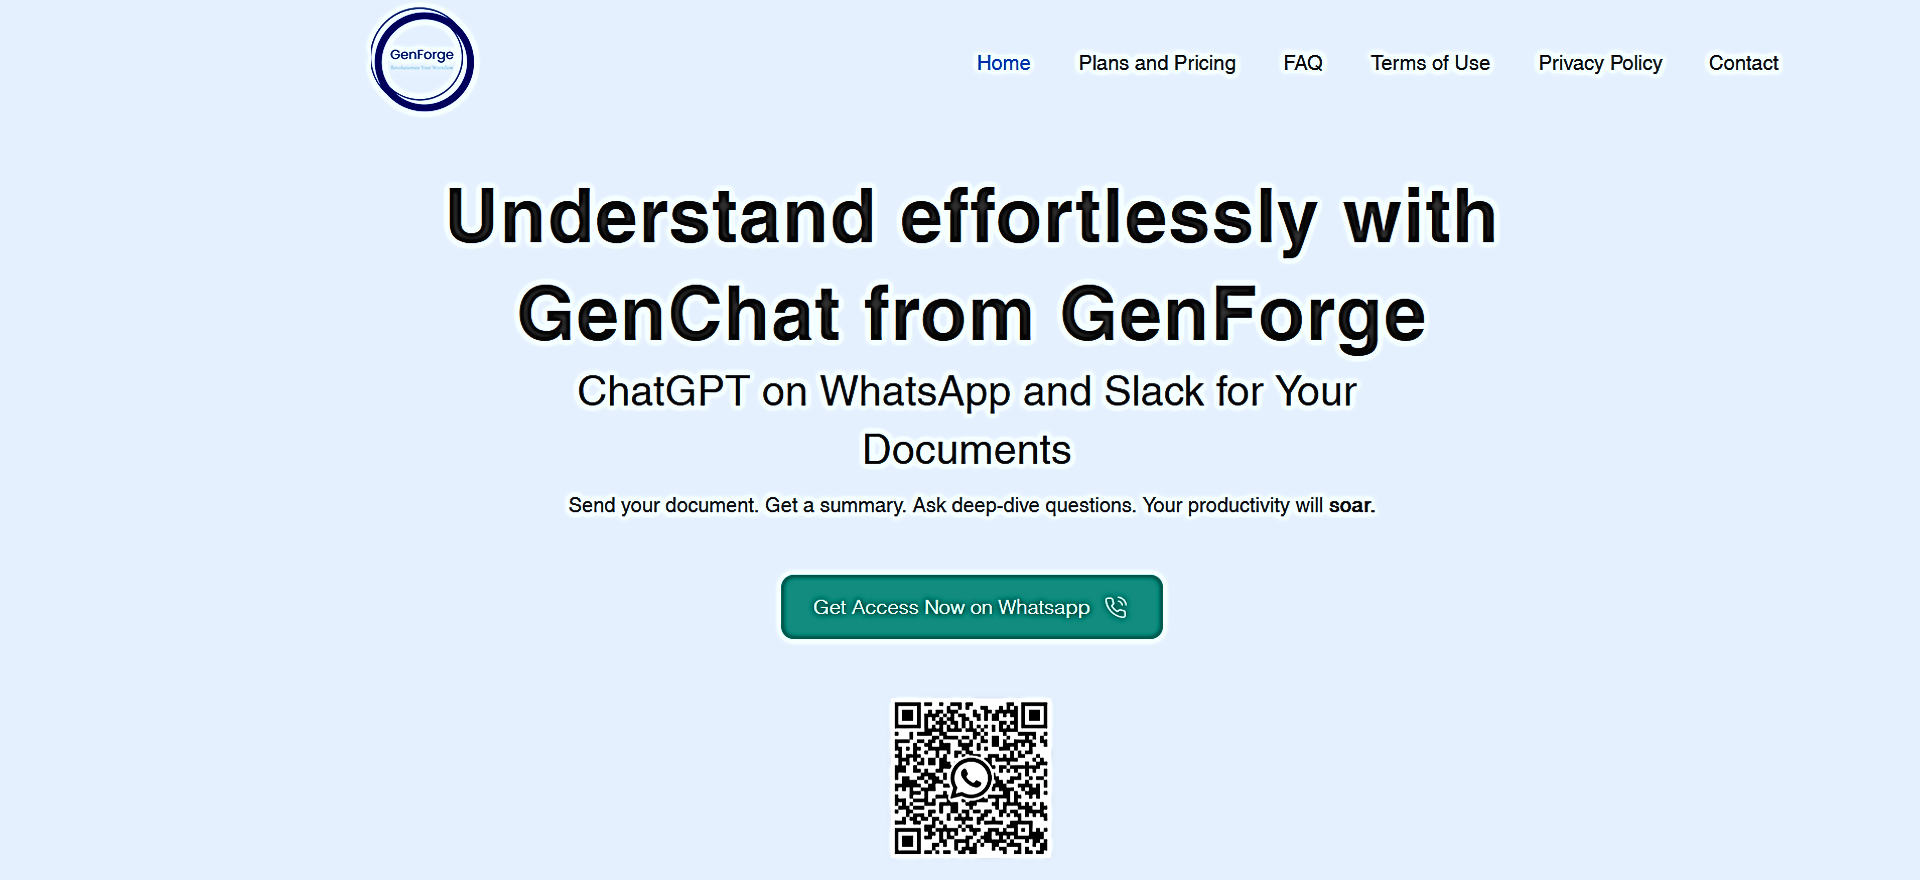 GenForge featured